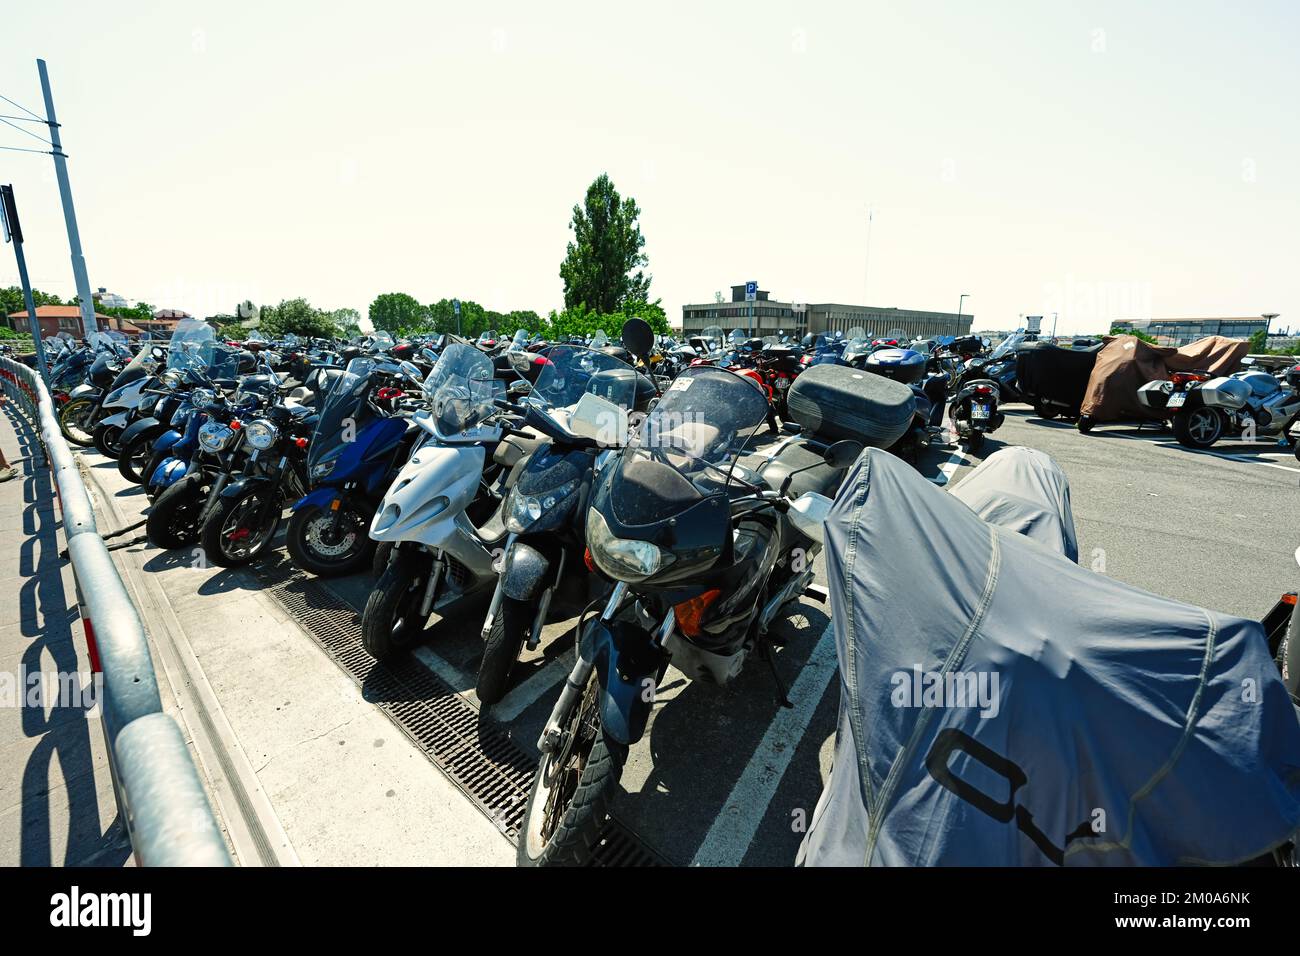 Venedig, Italien - 04. Juli 2022: Motorroller, Motorräder und Mopeds auf  dem Parkplatz an einem sonnigen Sommertag in Venedig, Italien  Stockfotografie - Alamy